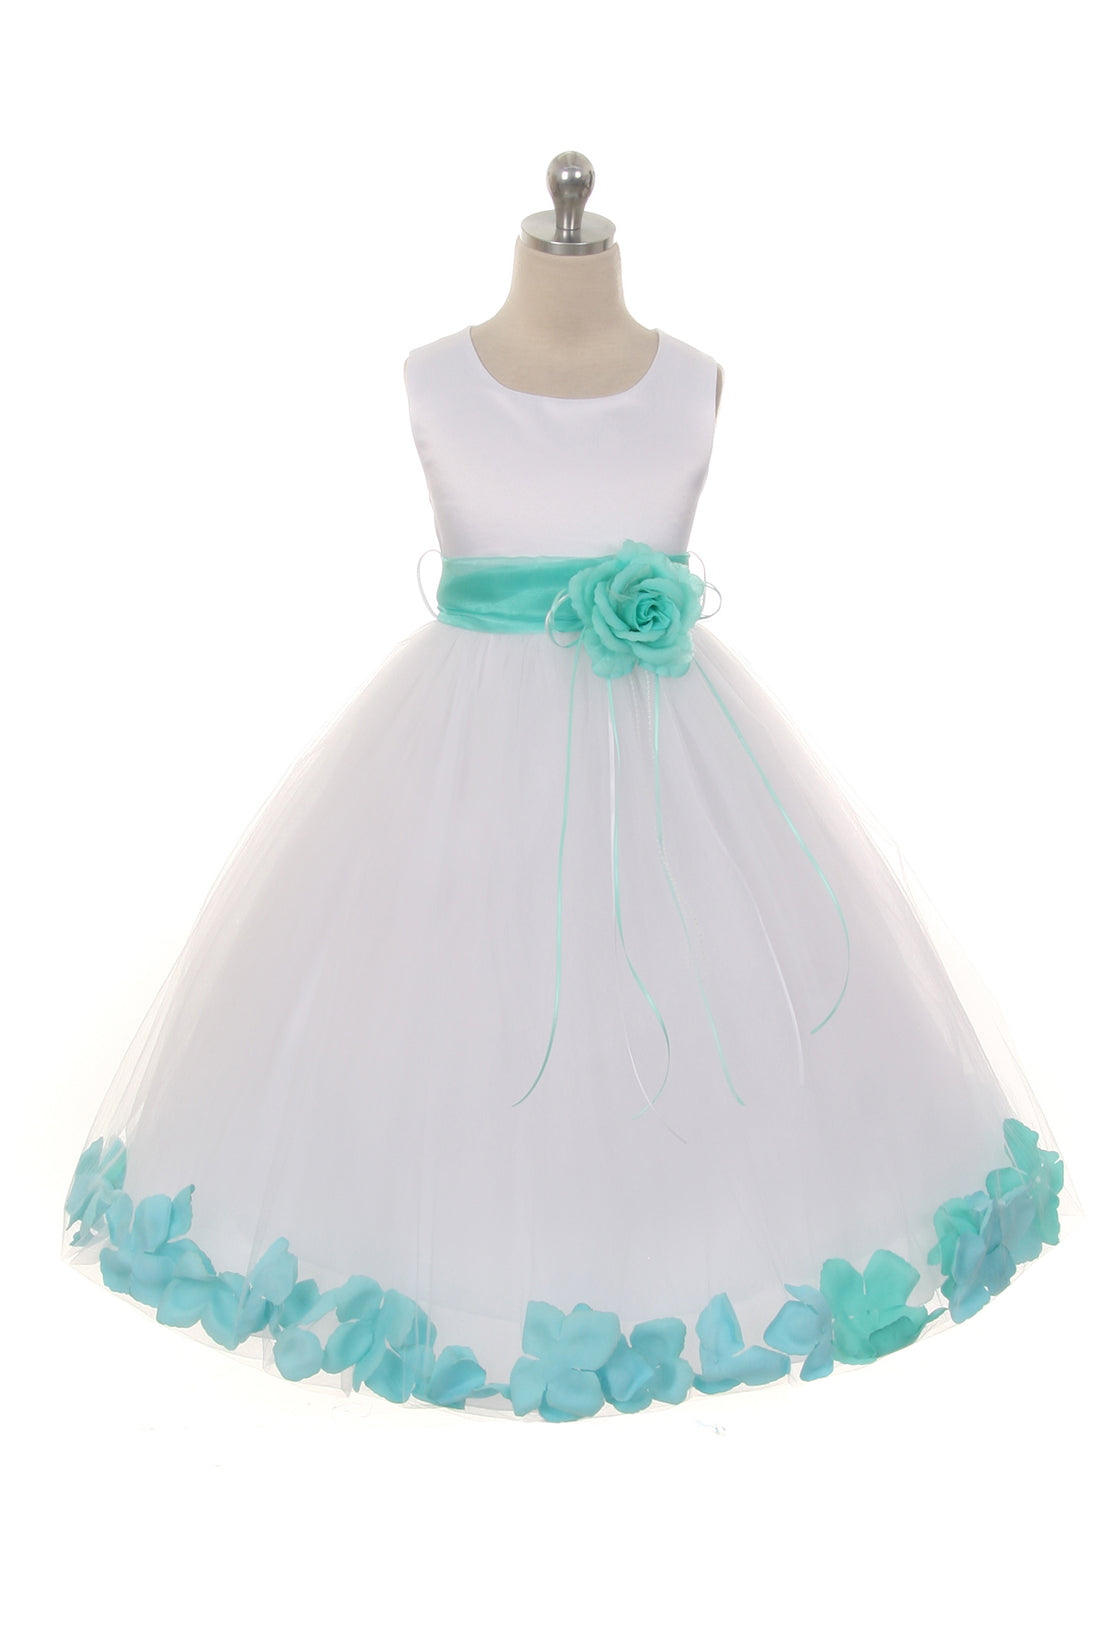 Satin Flower Petal White Flower Girl Dress 1of2 by AS160B Kids Dream - Girl Formal Dresses